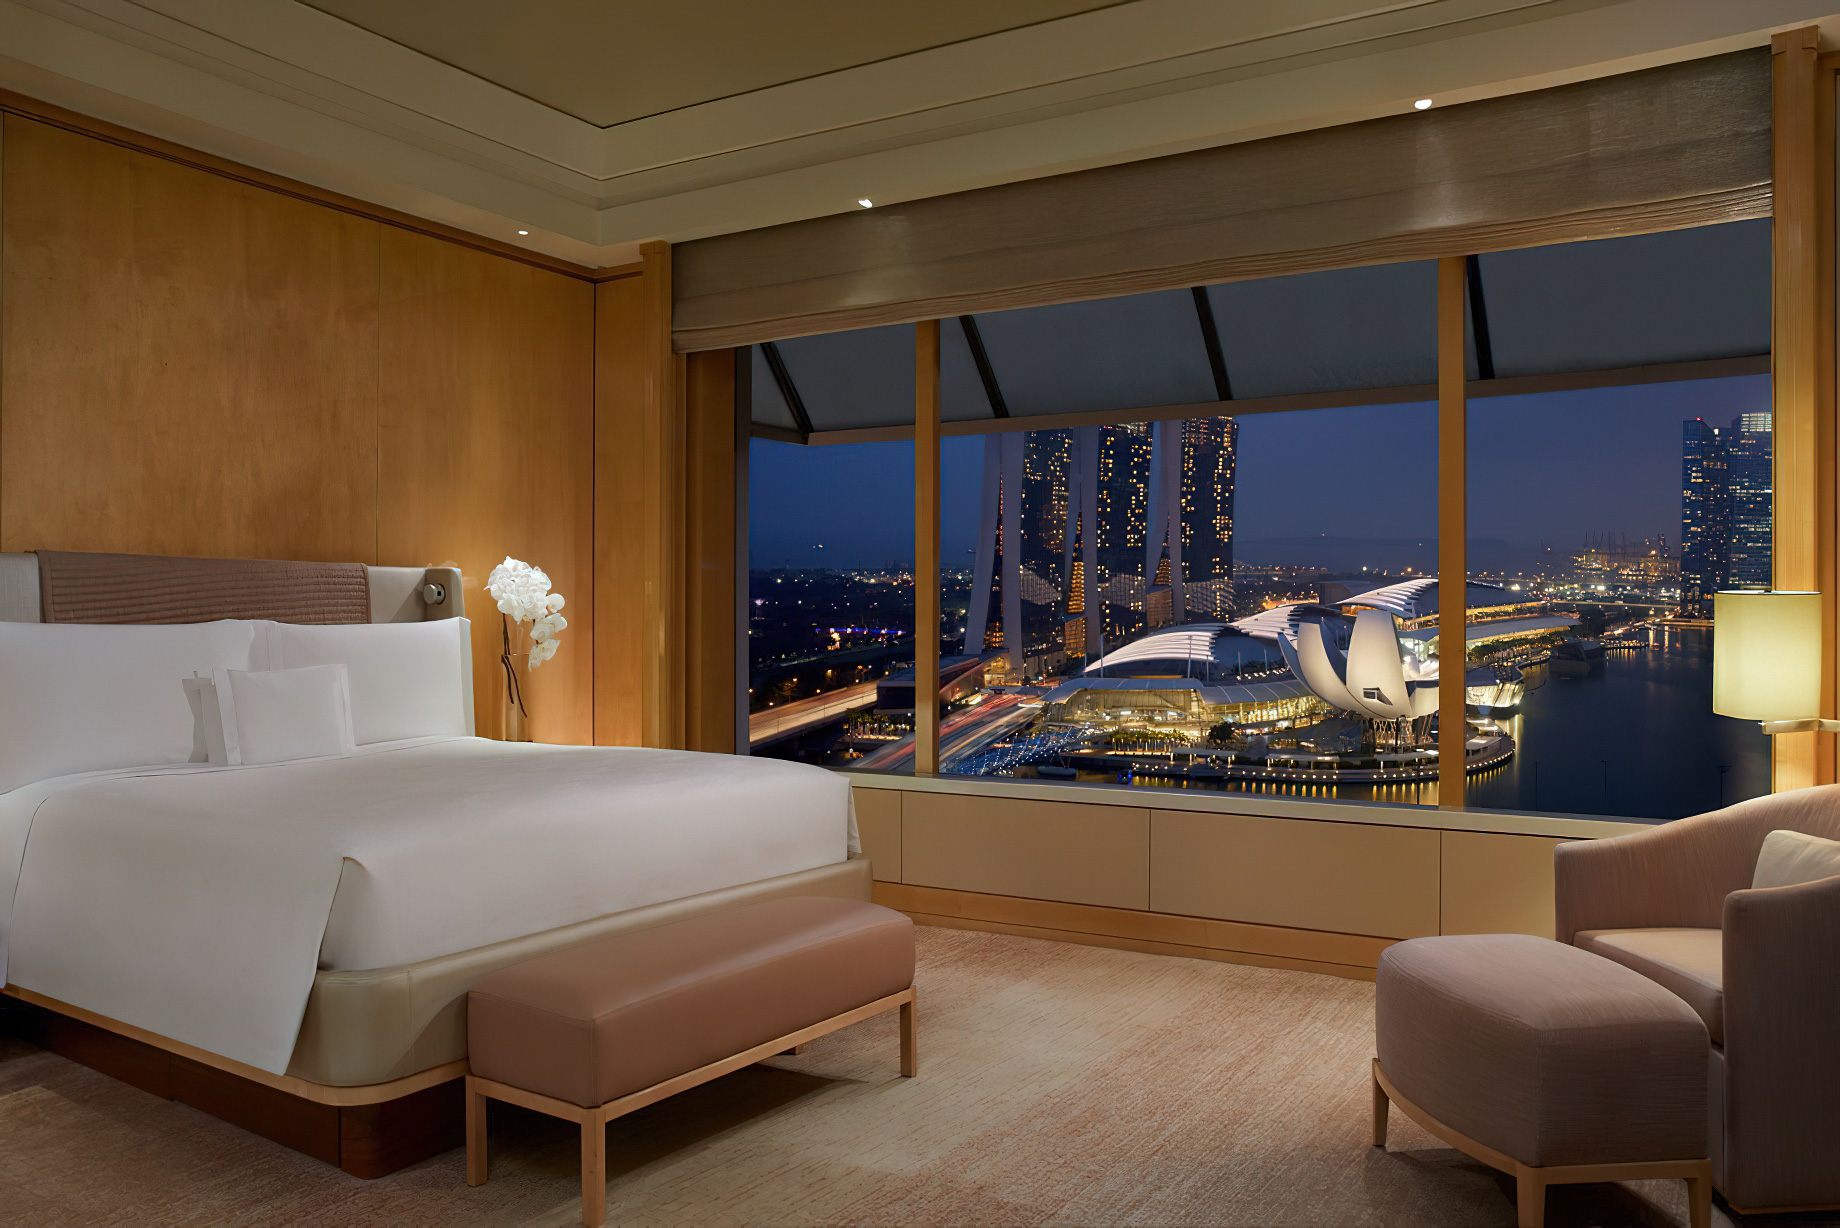 The Ritz-Carlton, Millenia Singapore Hotel – Singapore – Millenia Suite Bedroom Night